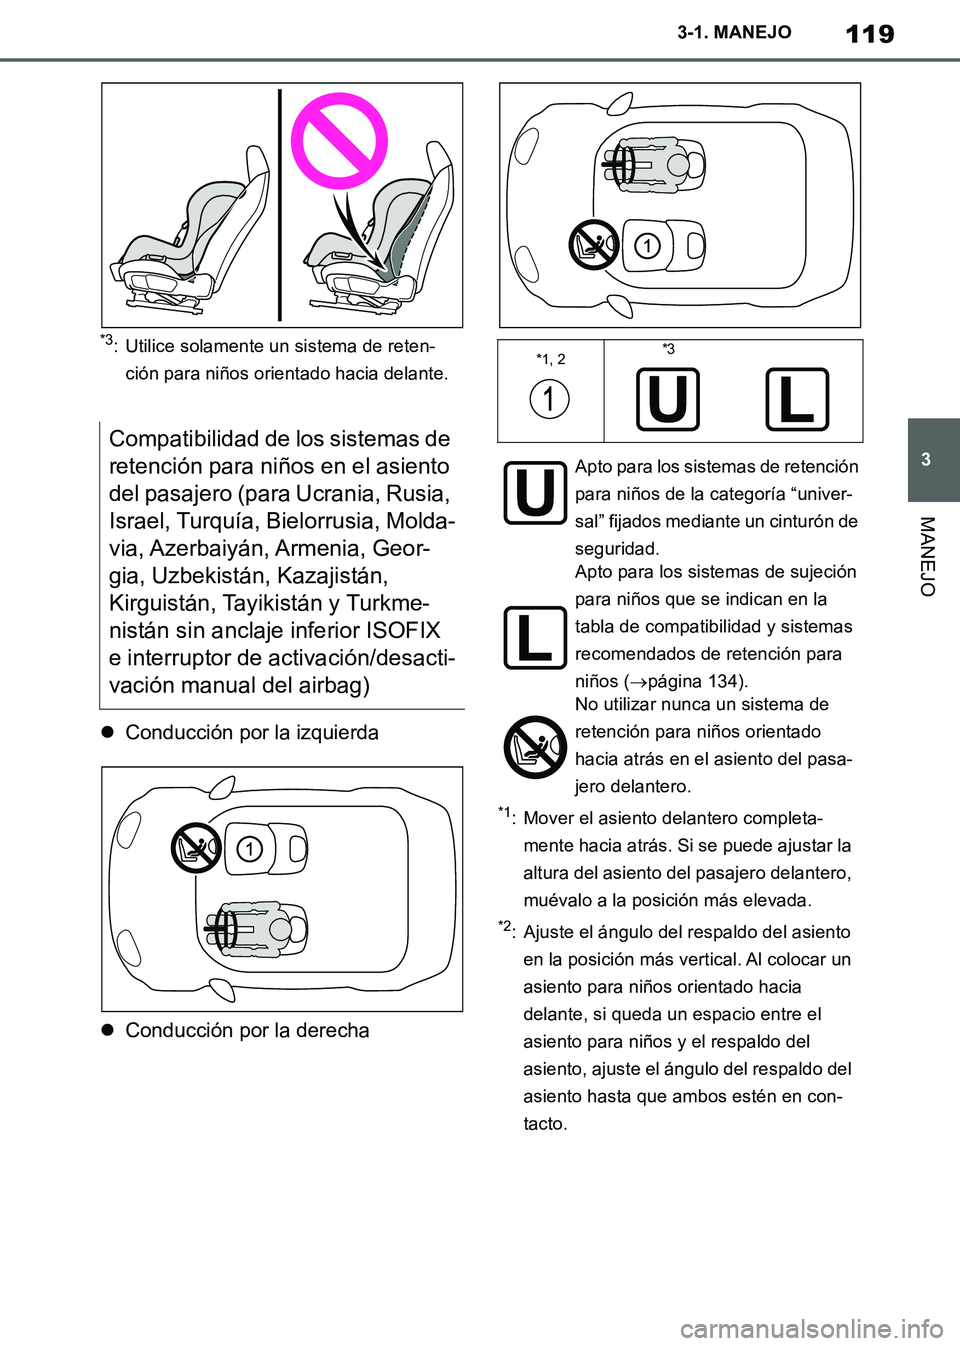 TOYOTA SUPRA 2019  Manuale de Empleo (in Spanish) 119
3
Supra Owners Manual_ES
3-1. MANEJO
MANEJO
*3: Utilice solamente un sistema de reten-
ción para niños orientado hacia delante.
Conducción por la izquierda
Conducción por la derecha
*1: